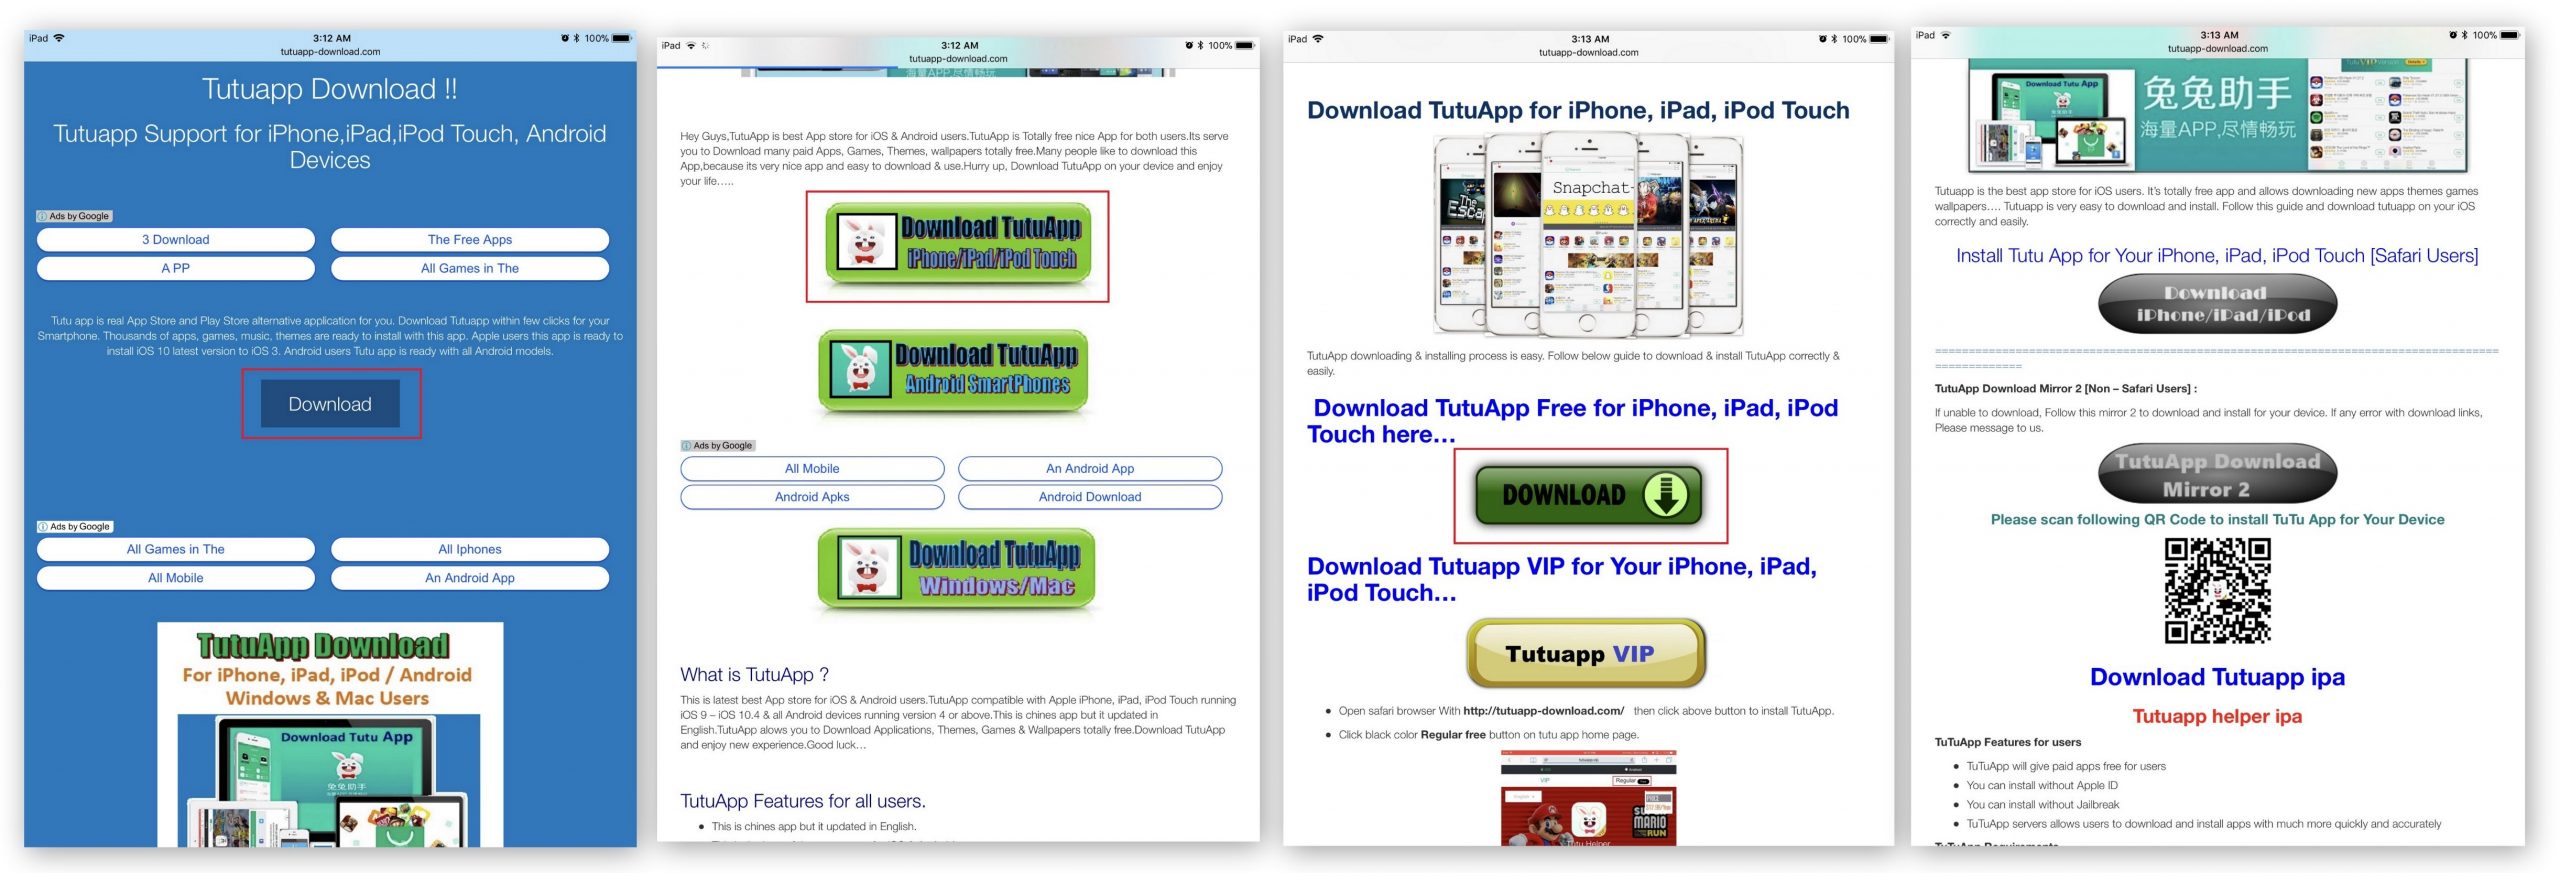 Tutuapp ios free download